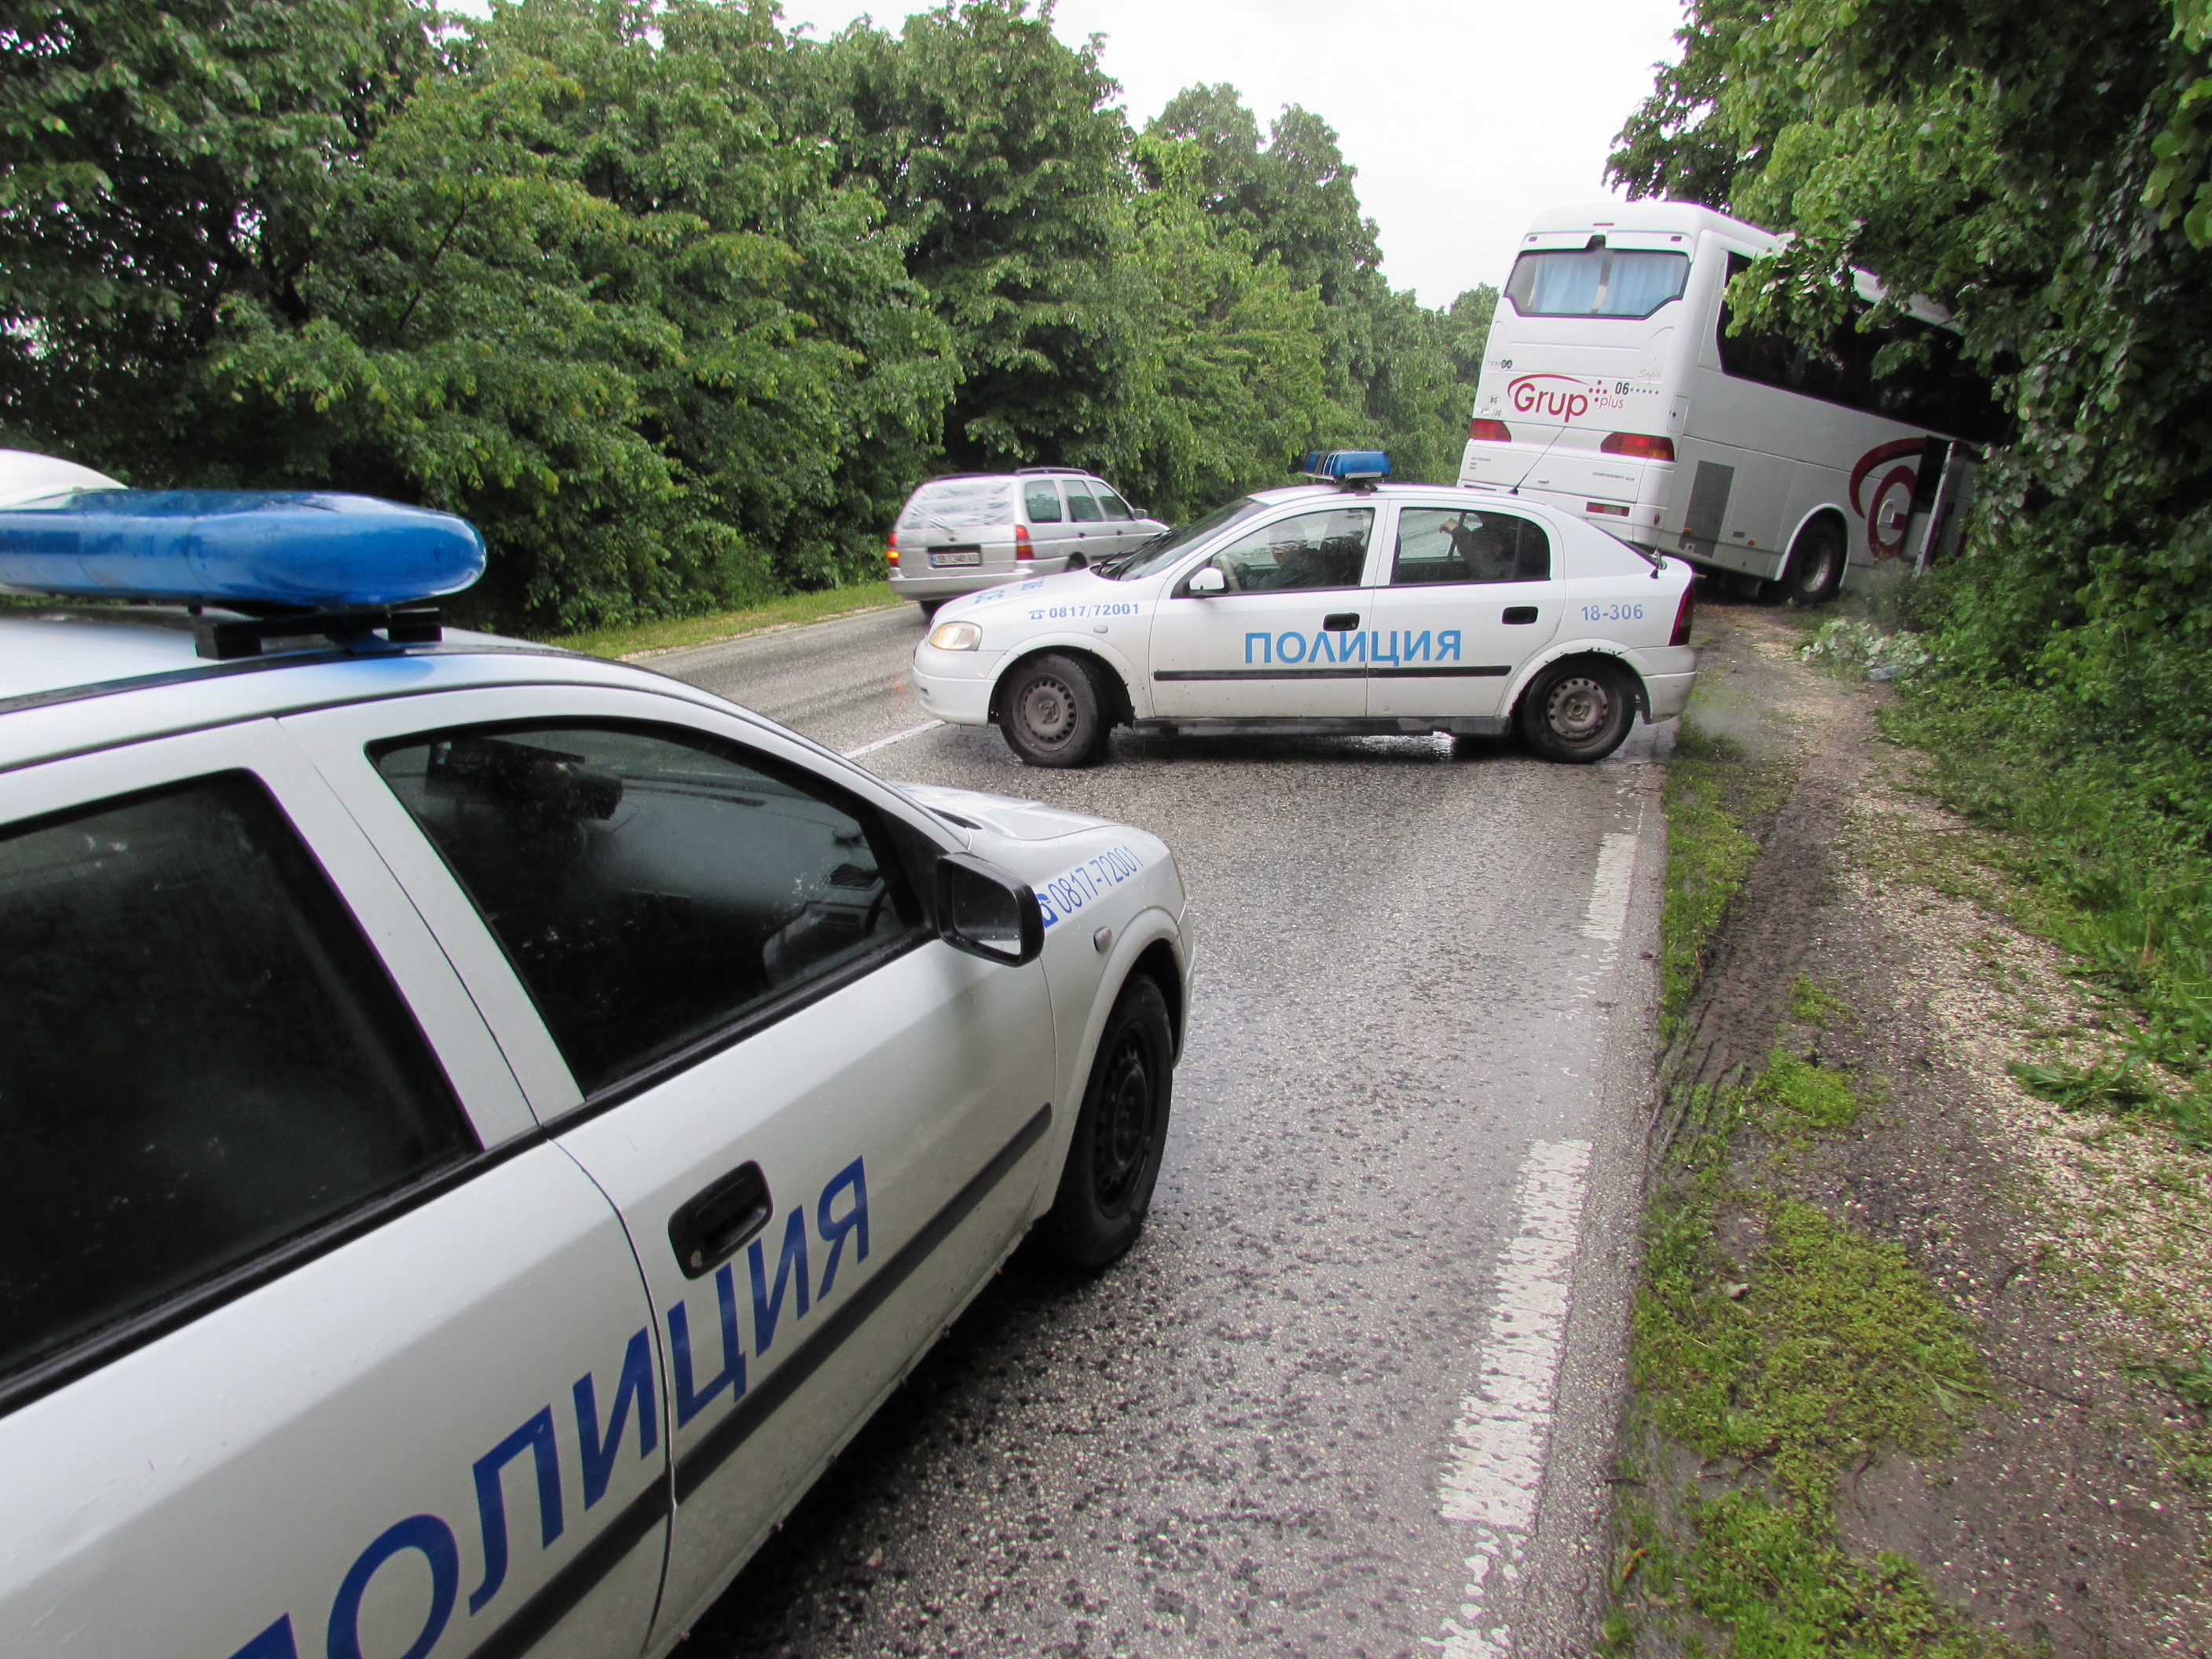 Автобусът е пътувал по направление София-Букурещ. Малко преди разклона за село Обретеник, по думите на шофьора, той е бил засечен от насрещно движещ се тир. За да избегне сблъсъка, водачът се е отклонил вдясно. Заради мокрия път автобусът е поднесъл и се е ударил в крайпътно дърво.